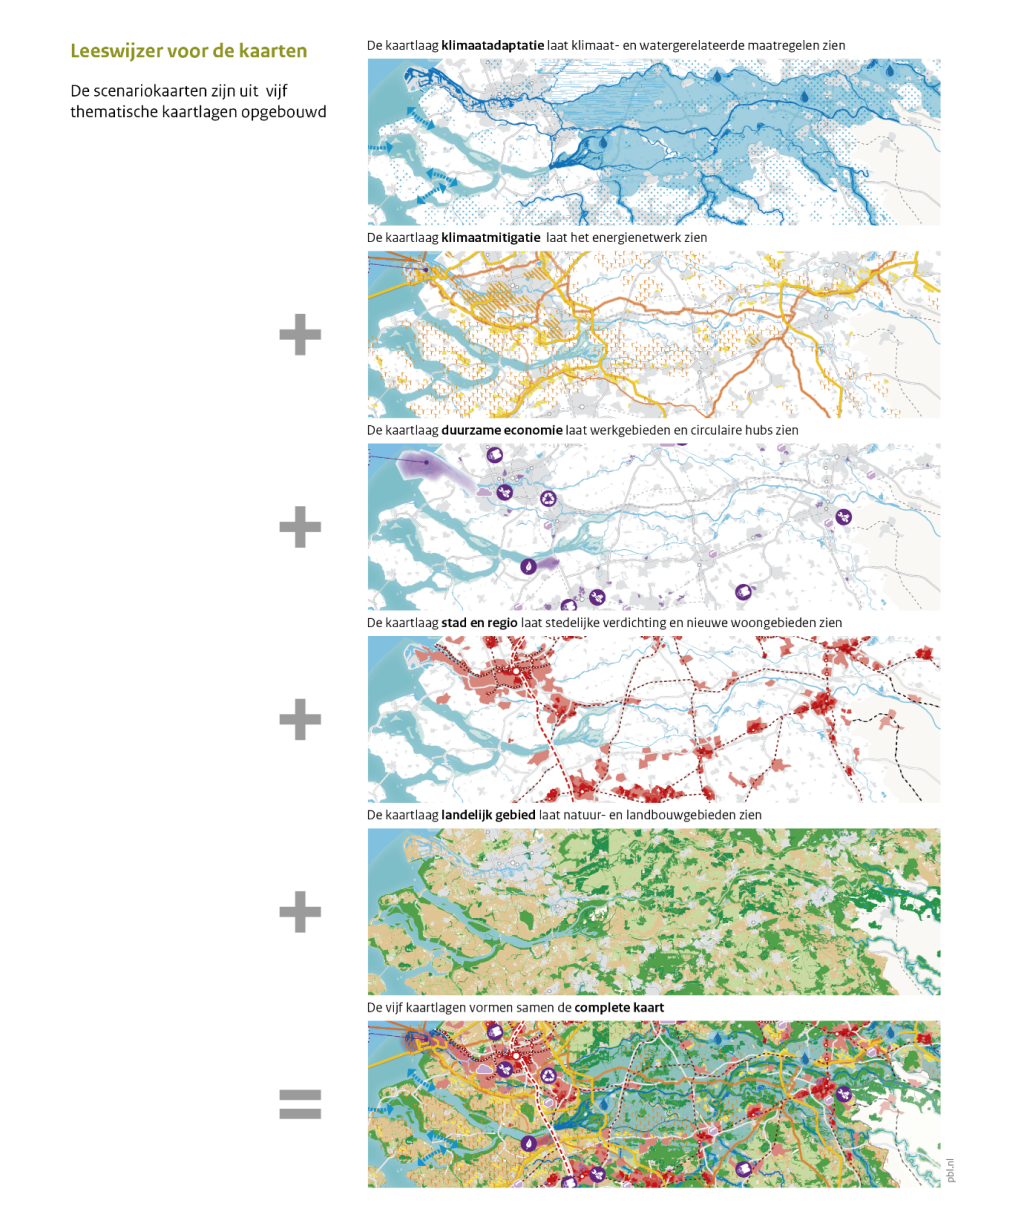 De scenario kaarten geven verschillende voorbeelden van functiecombinaties, zowel in stedelijk en landelijk gebied als op de Noordzee